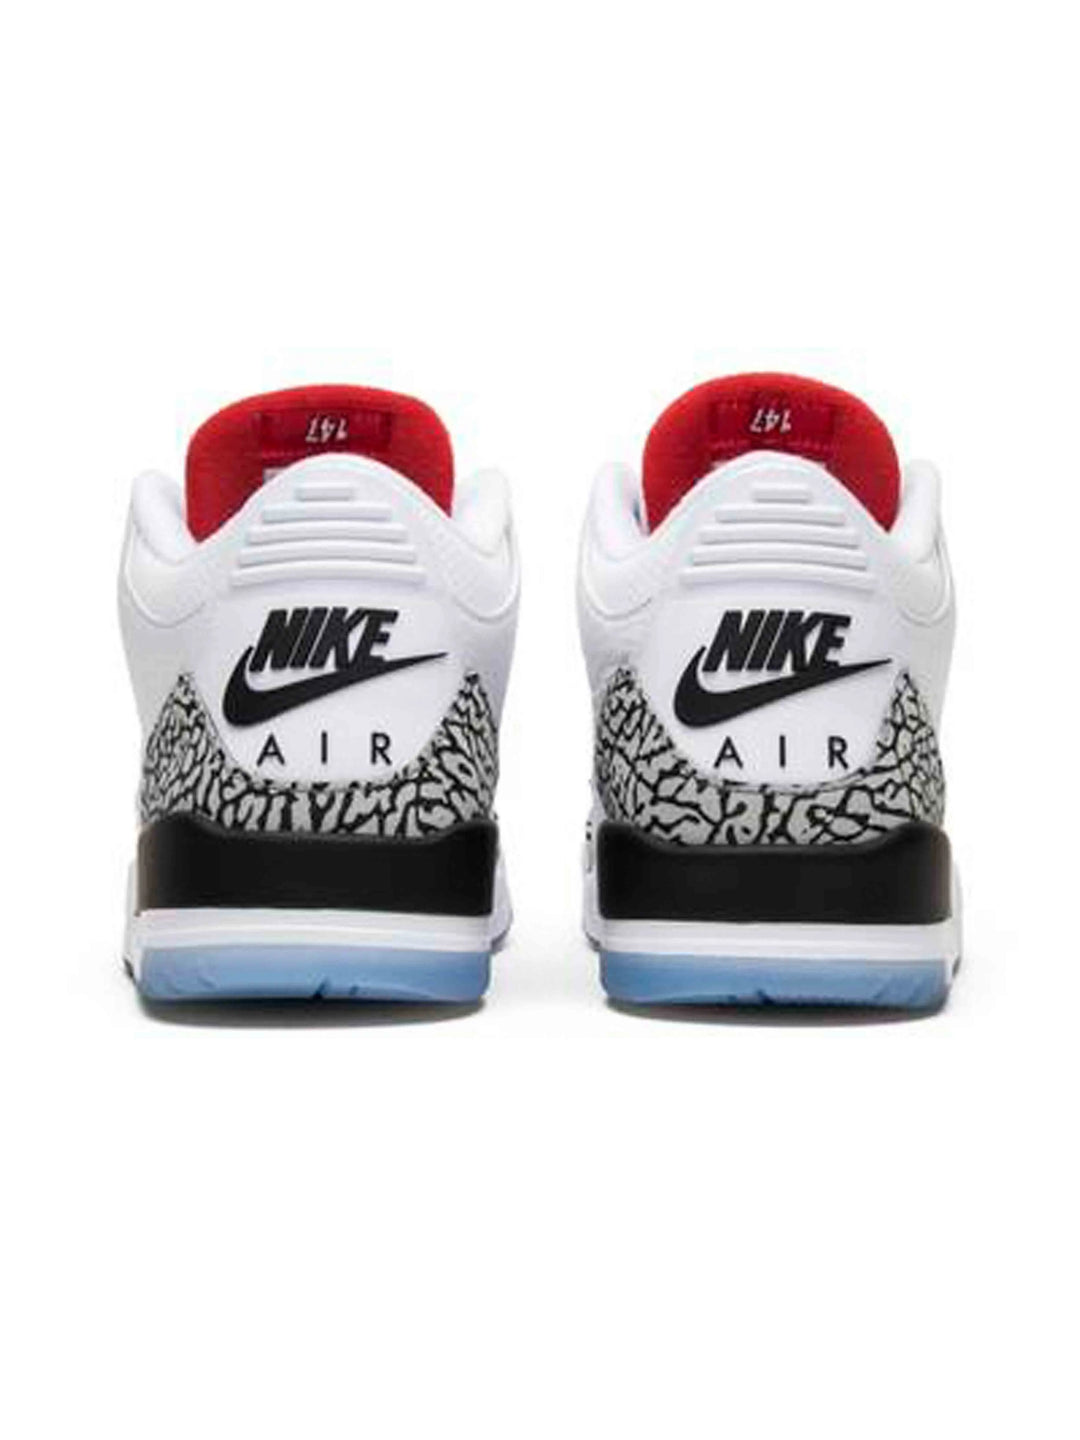 Nike Air Jordan 3 Retro Free Throw Line White Cement Prior